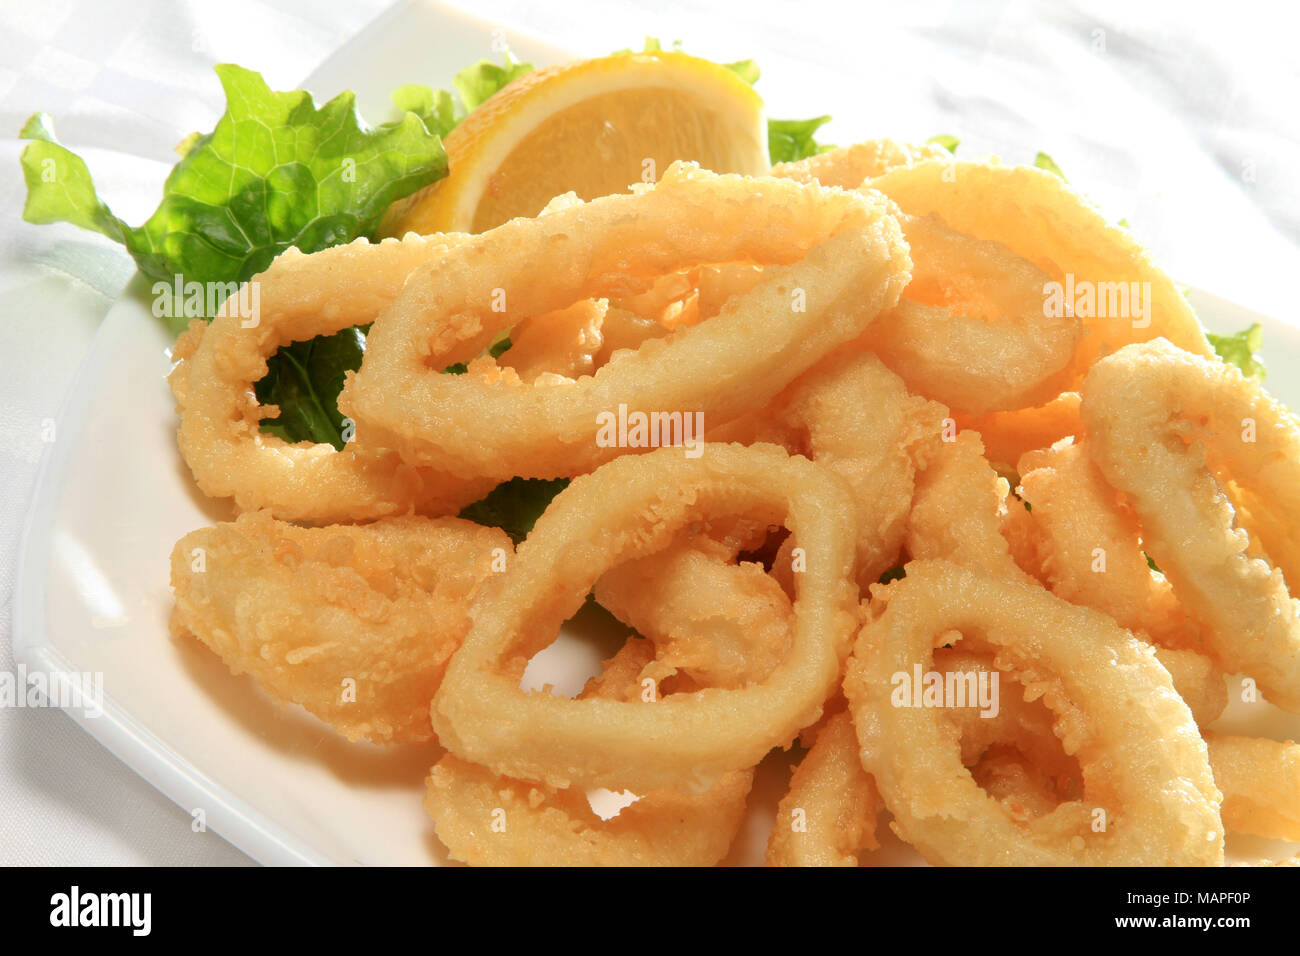 Frittierte Tintenfischringe Mit Grunem Salat Und Zitrone Stockfotografie Alamy